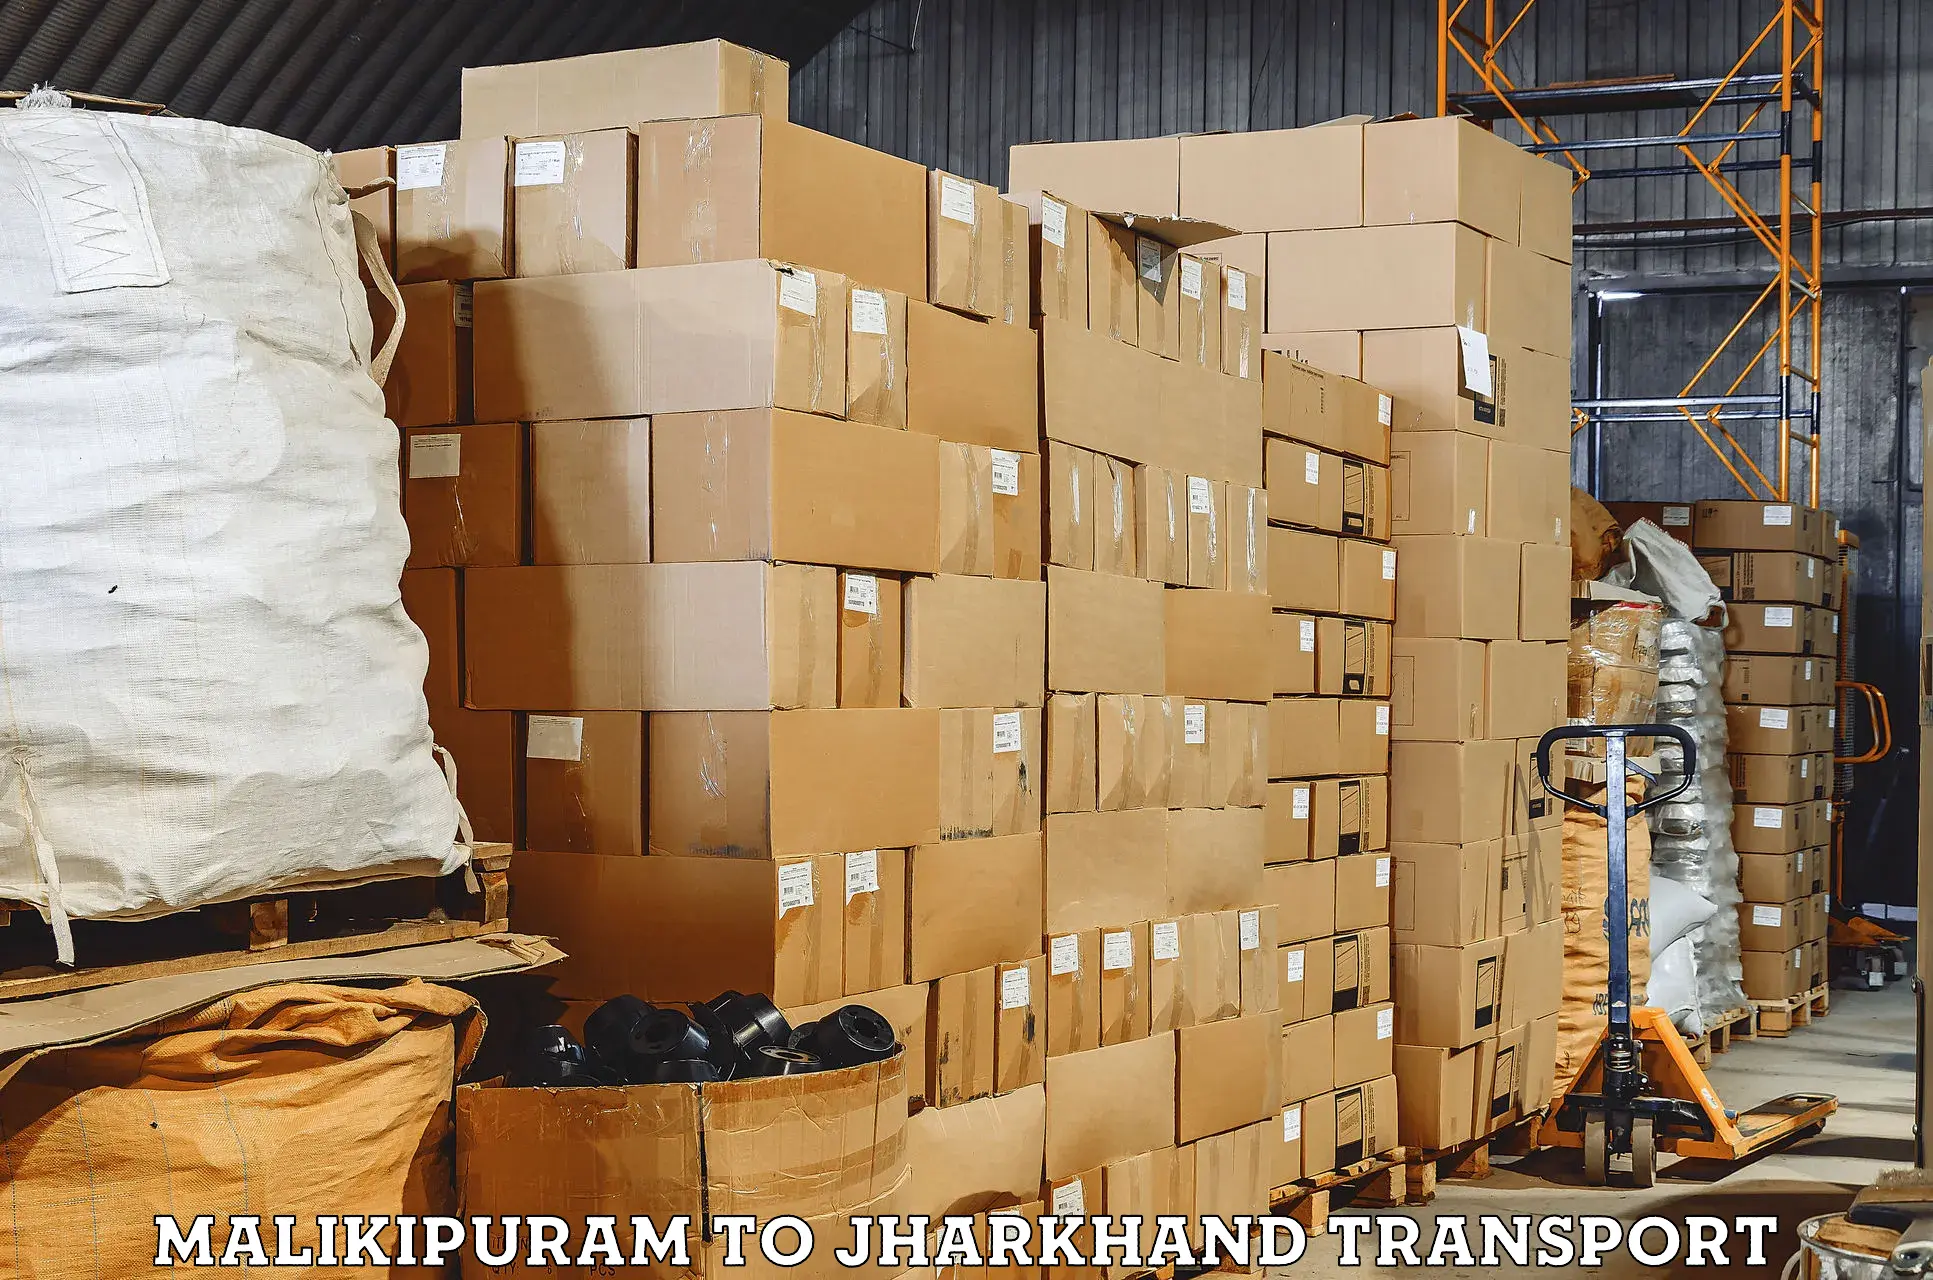 Lorry transport service Malikipuram to Gobindpur